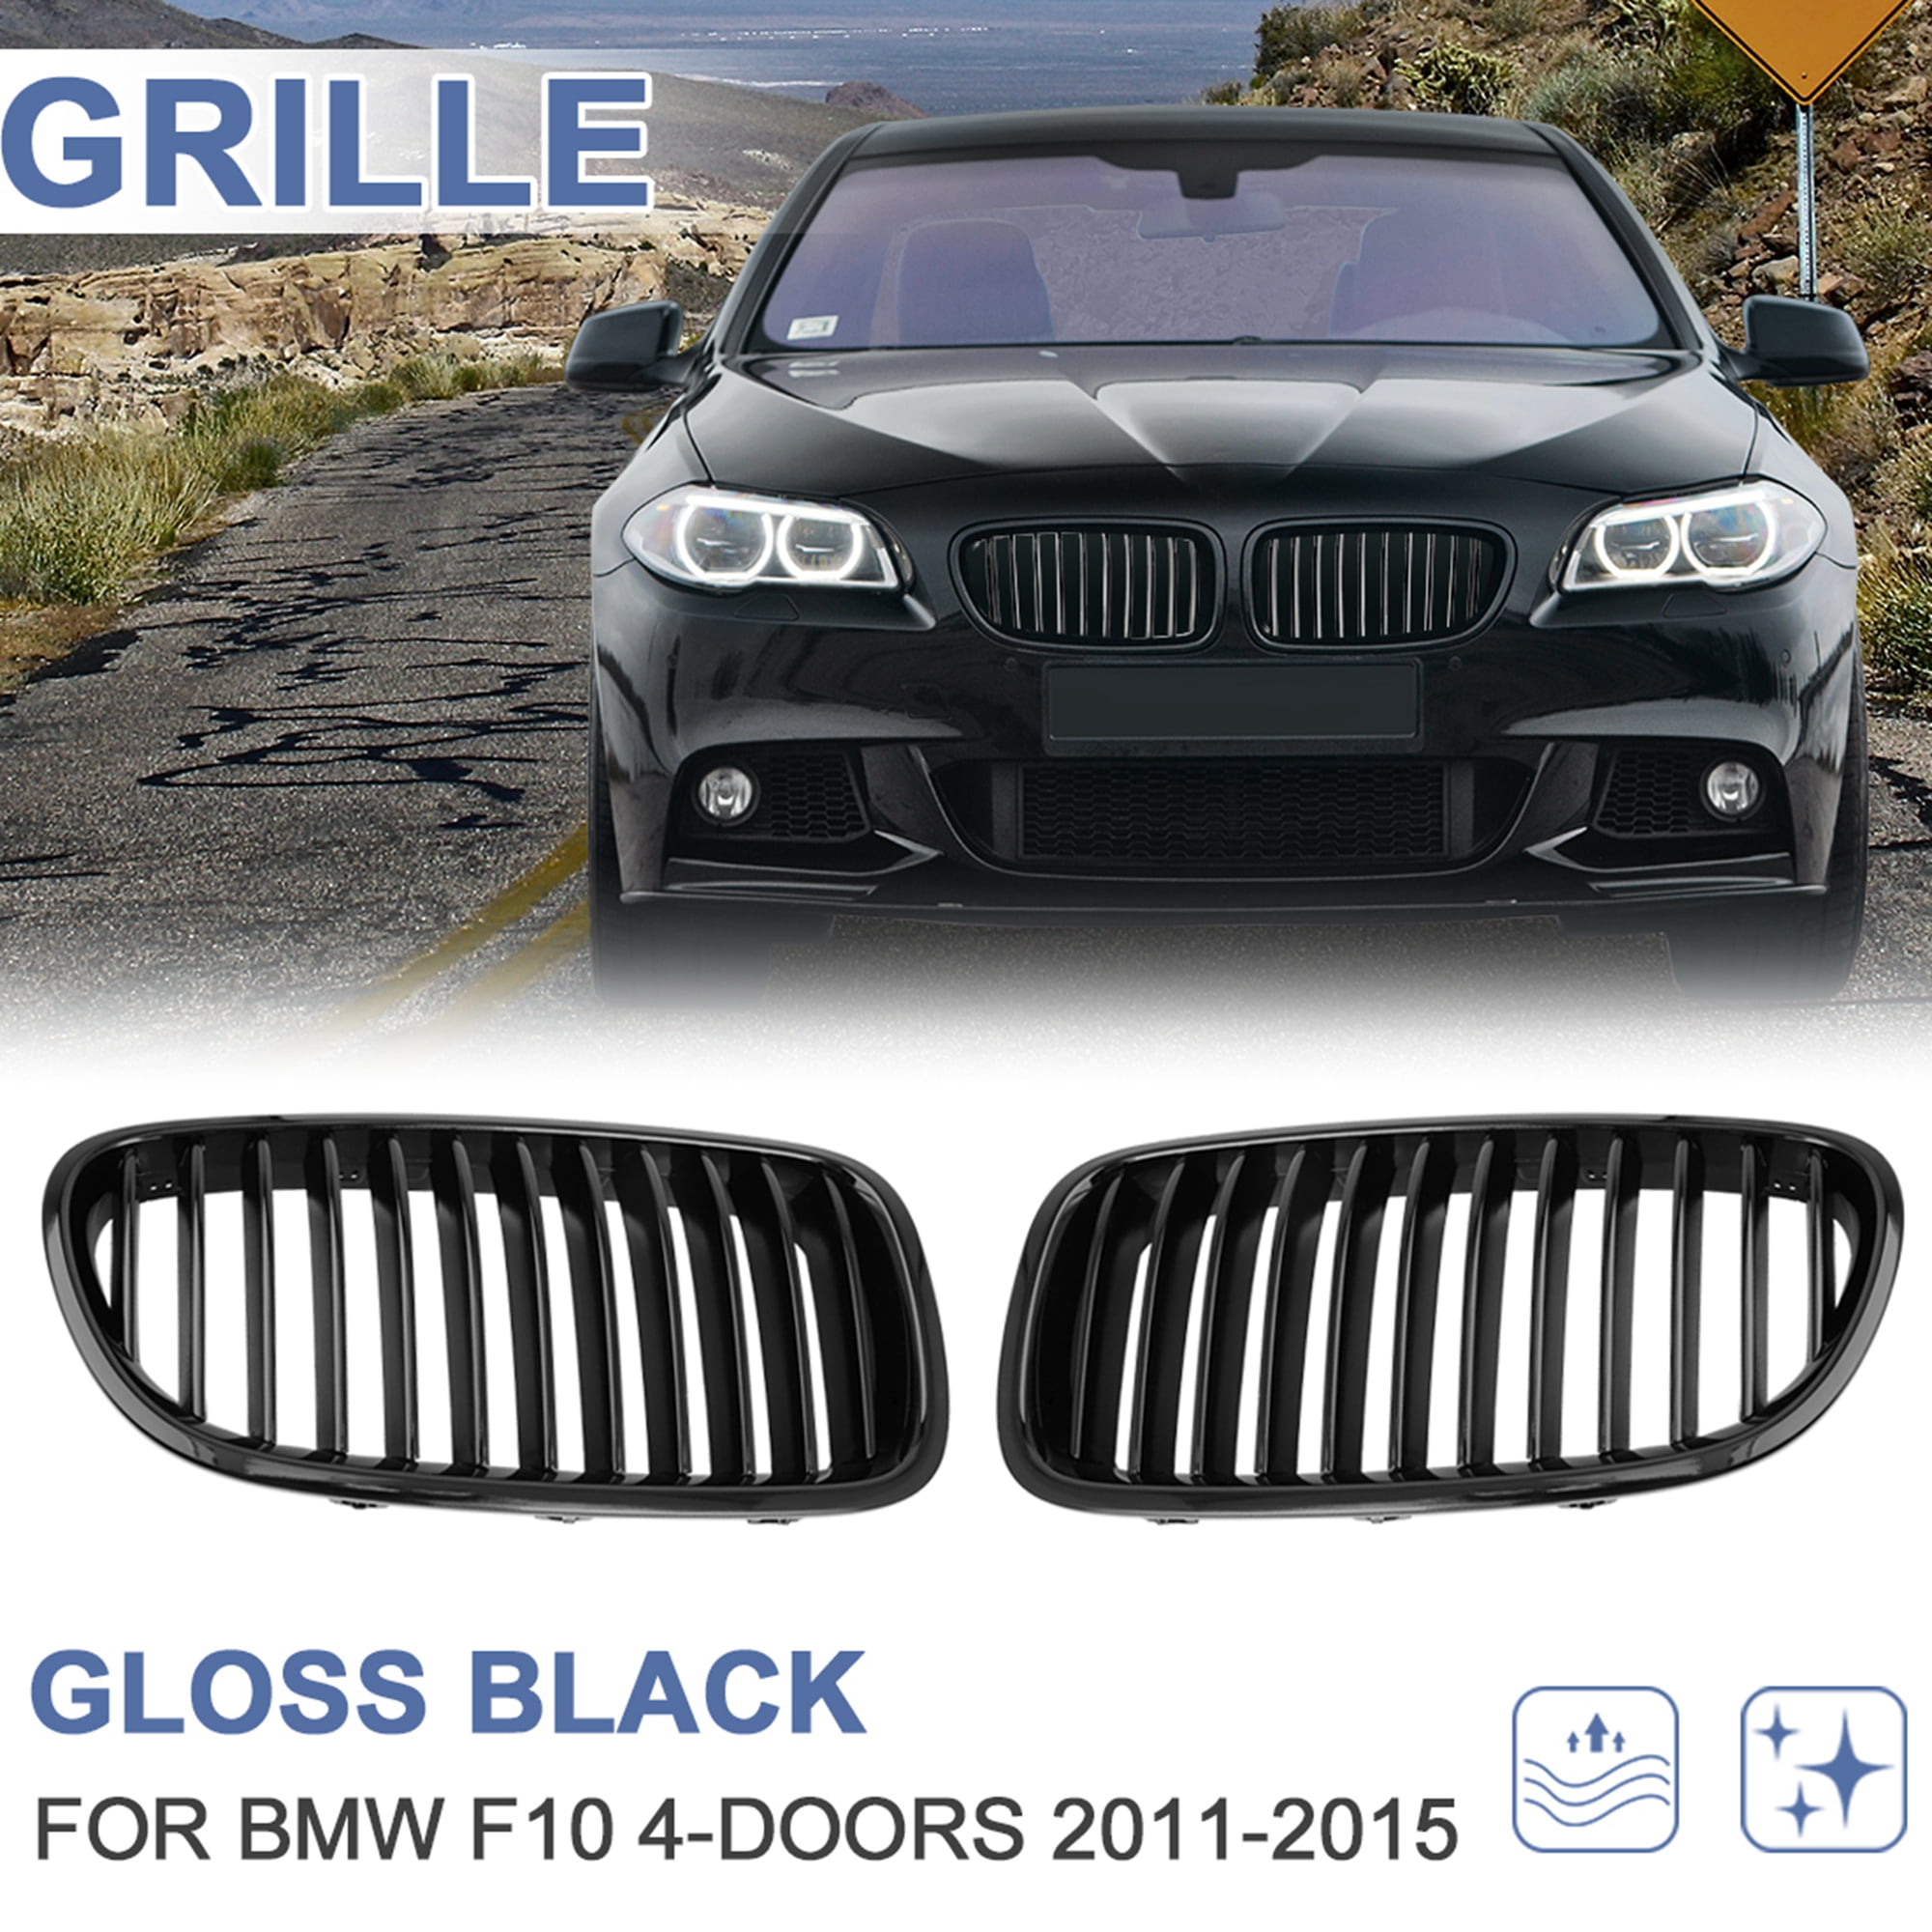 Interior Door Window Lift Regulator Cover Trim For BMW 5 series F10 2011-2015